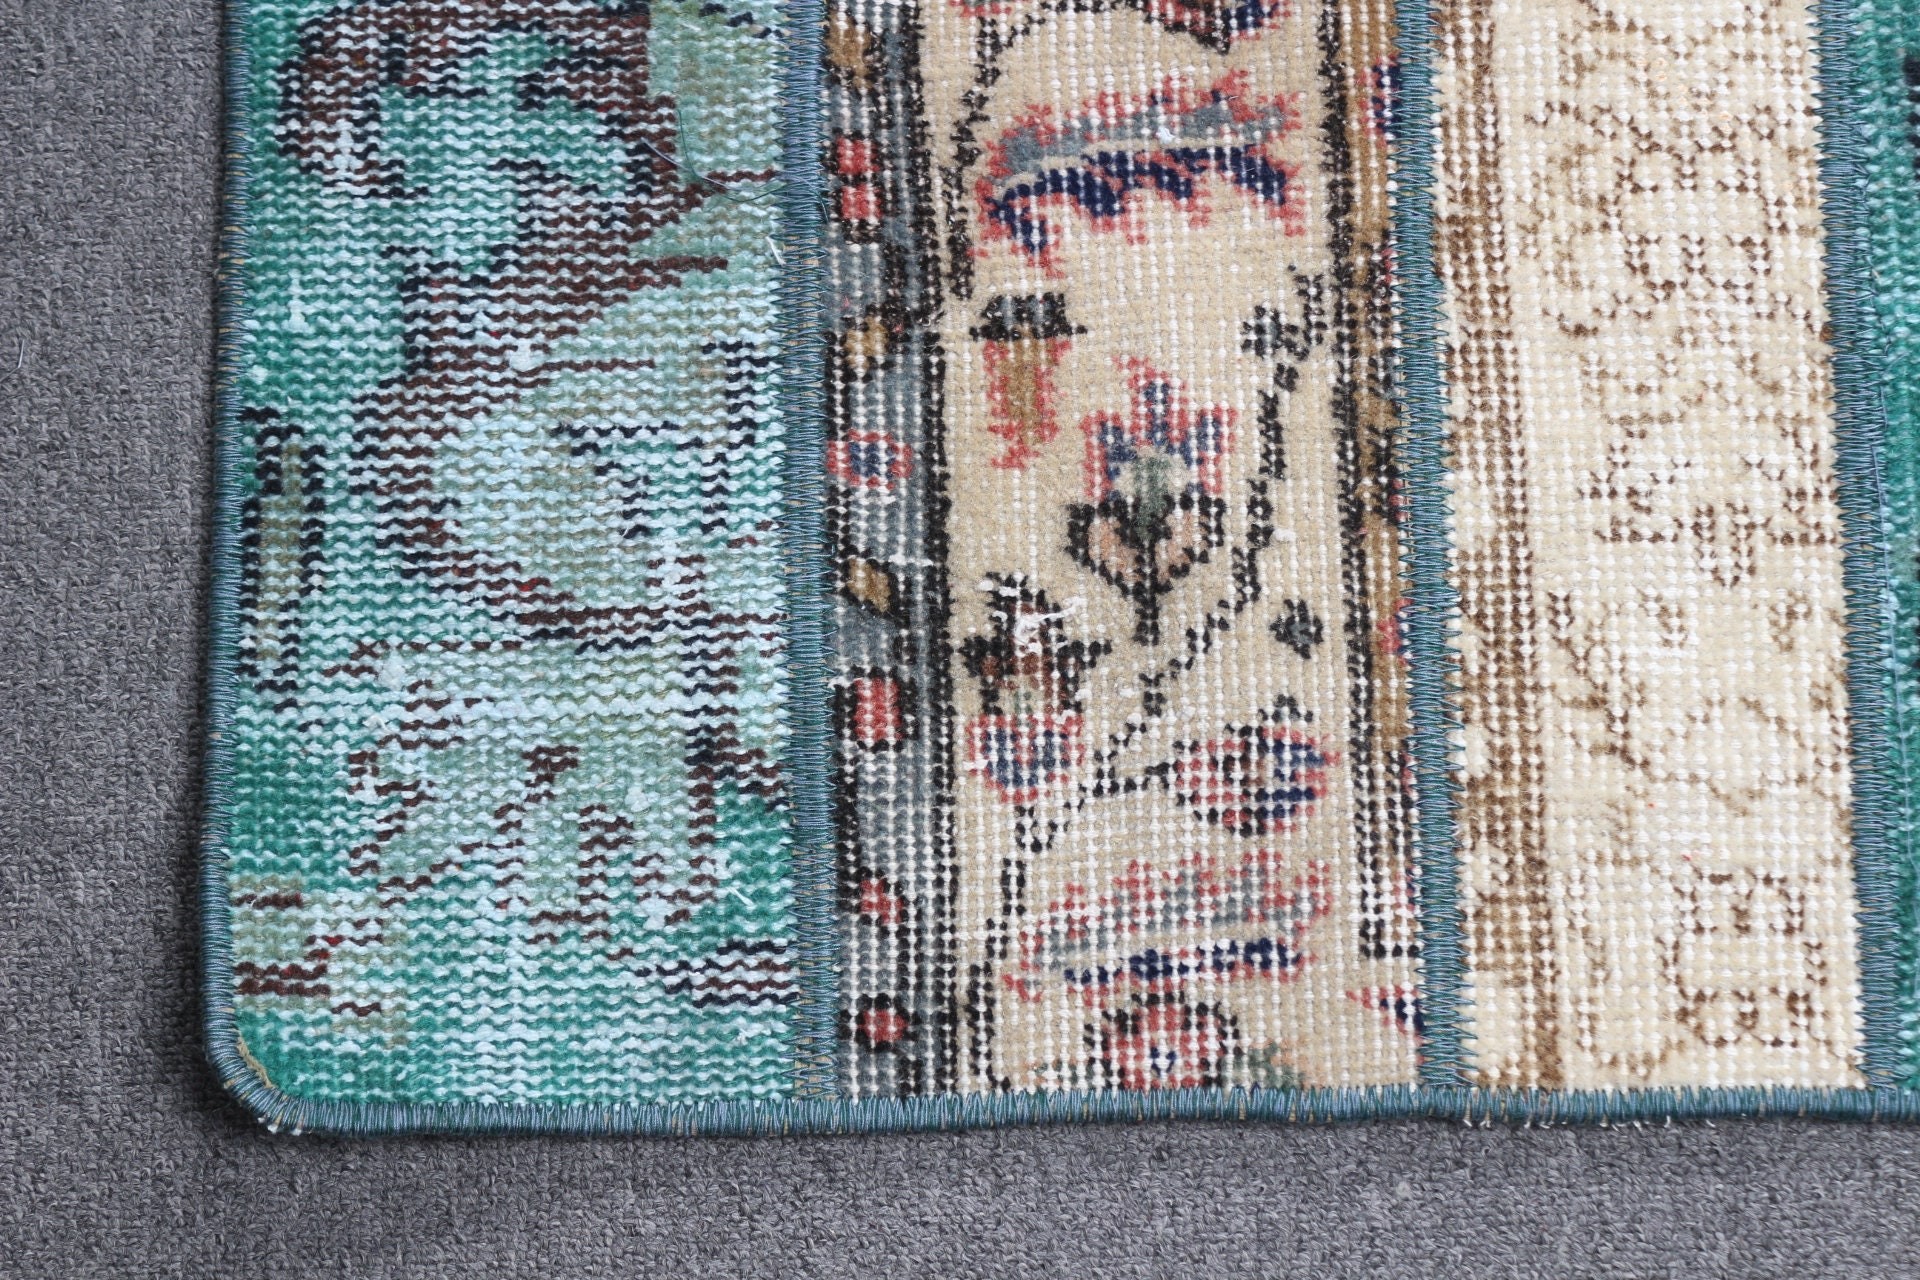 Green Anatolian Rugs, 1.9x6.1 ft Runner Rugs, Vintage Rug, Bedroom Rug, Hallway Rugs, Pastel Rug, Turkish Rug, Antique Rugs, Rugs for Stair